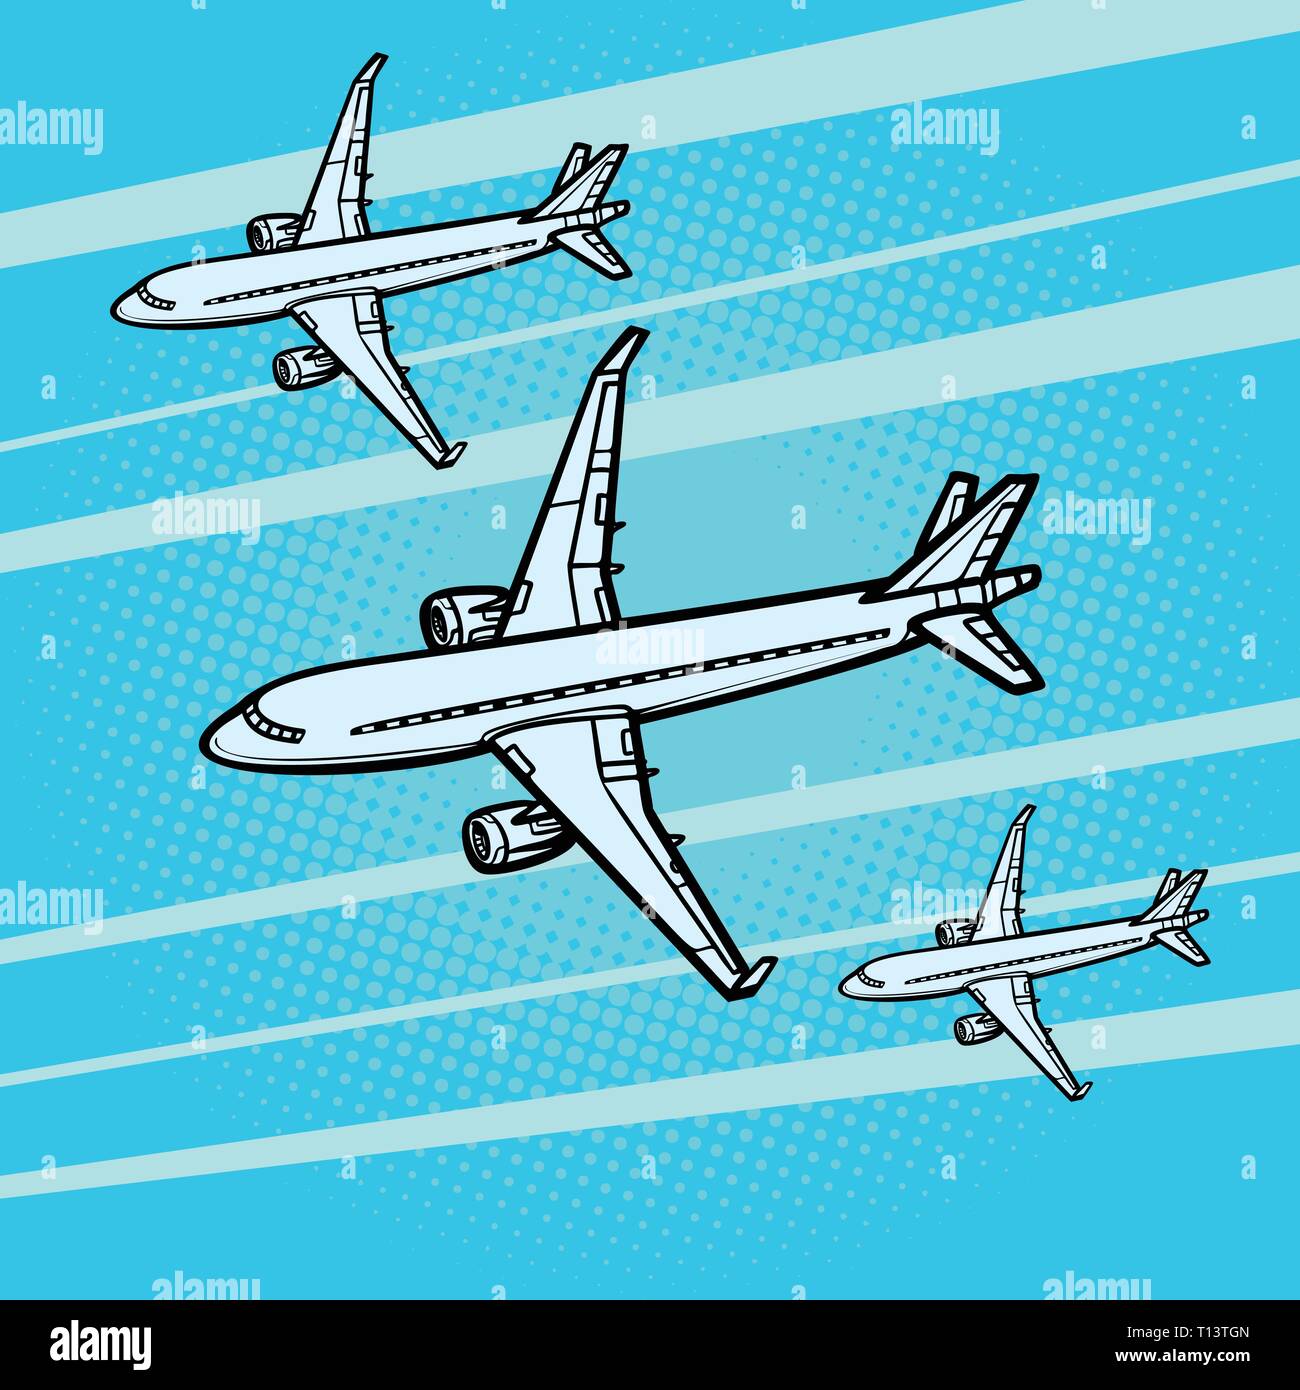 Molti aeroplani di linea passeggeri aerei di trasporto aereo Illustrazione Vettoriale